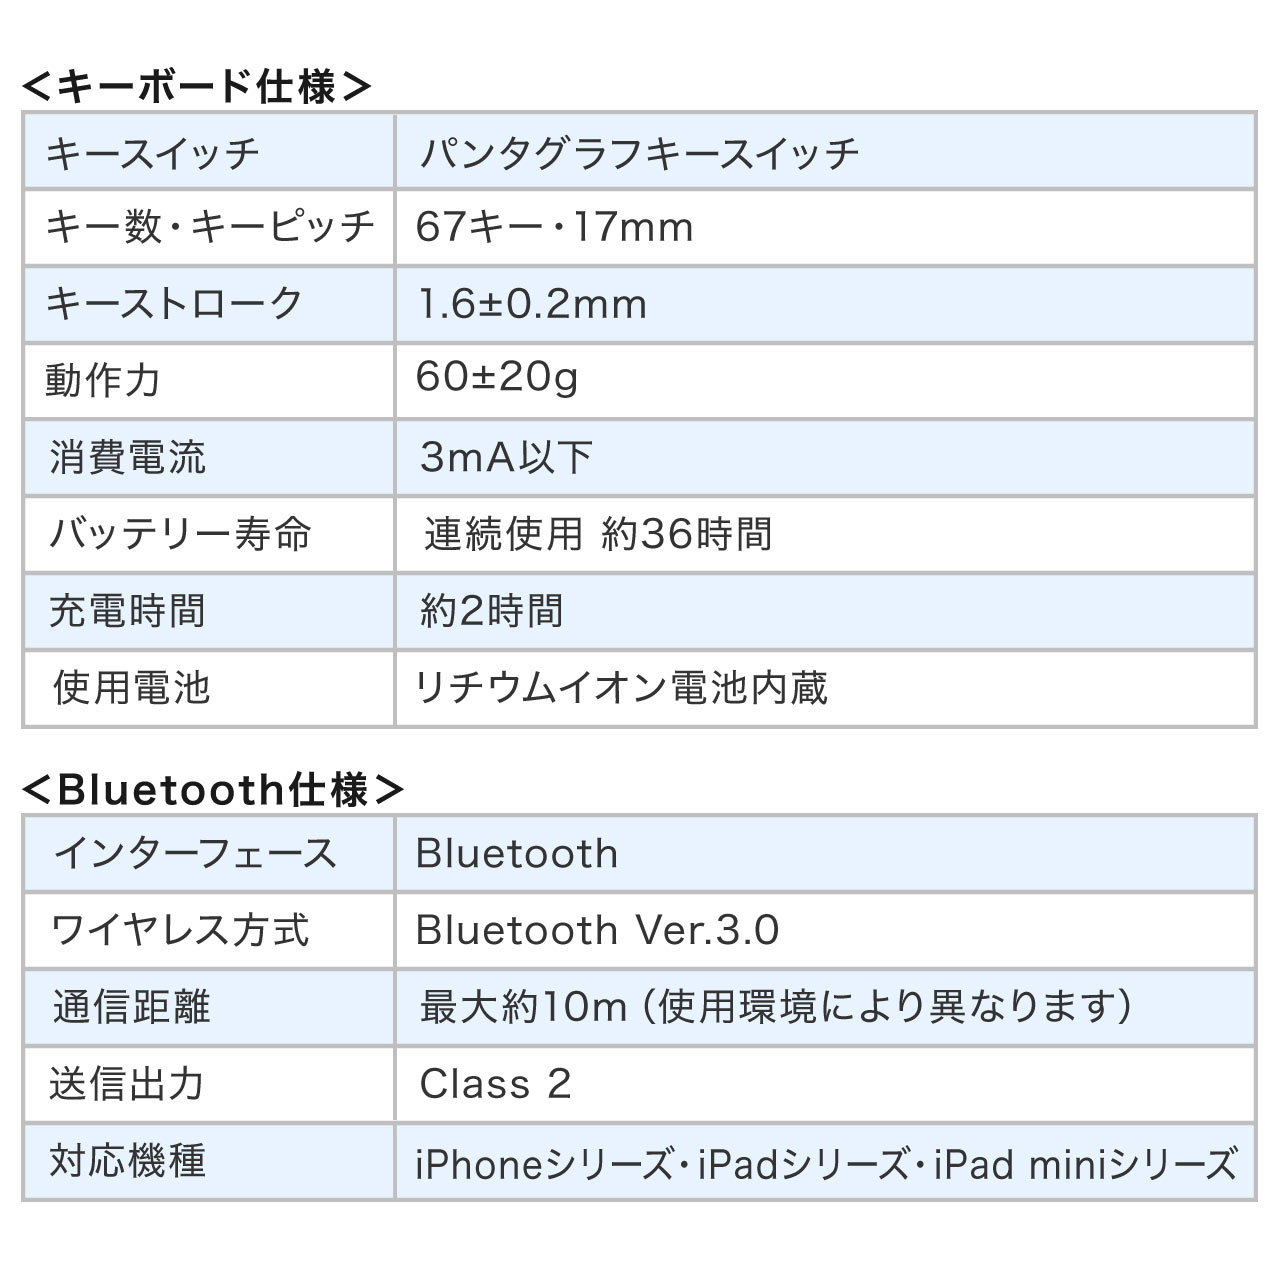 ܂肽ݎ BluetoothL[{[h iPhone iPadp pz USB[d }`yAOΉ ubN 400-SKB061